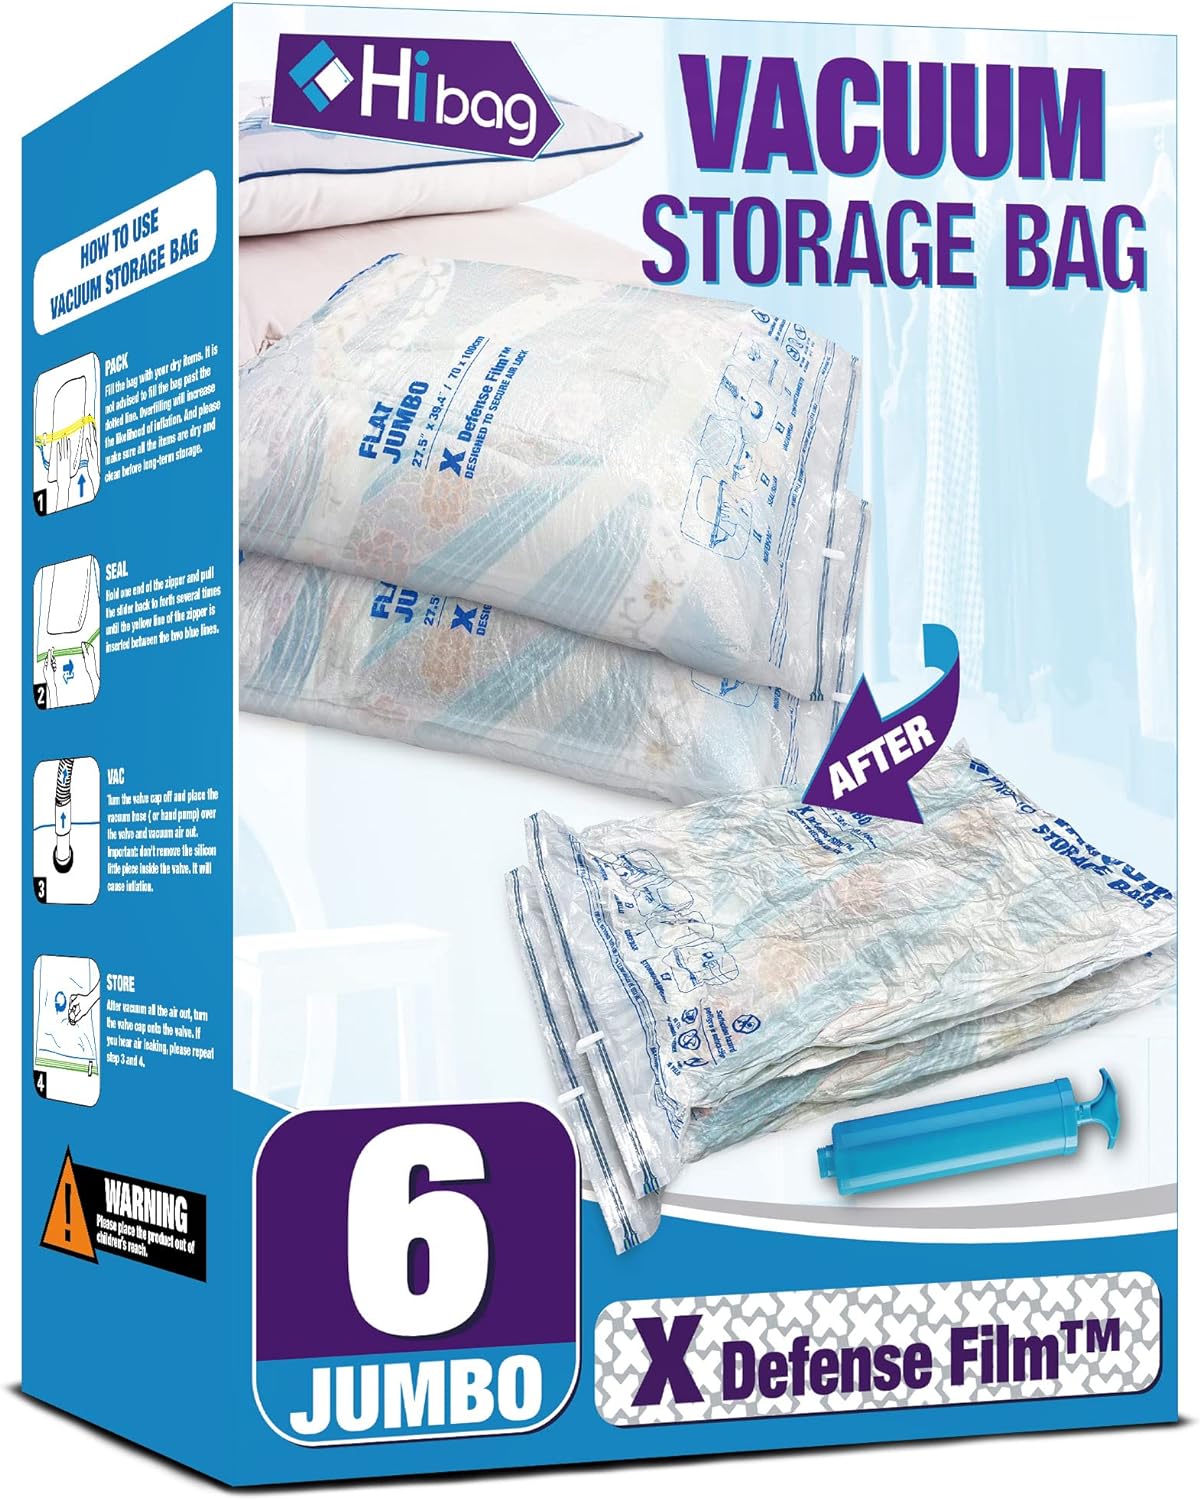 Vacuum Storage Bags, 6 Jumbo Space Saver Vacuum Seal Bags, Space Bags, Vacuum Sealer Bags for Clothes, Comforters, Blankets, Bedding (6J)